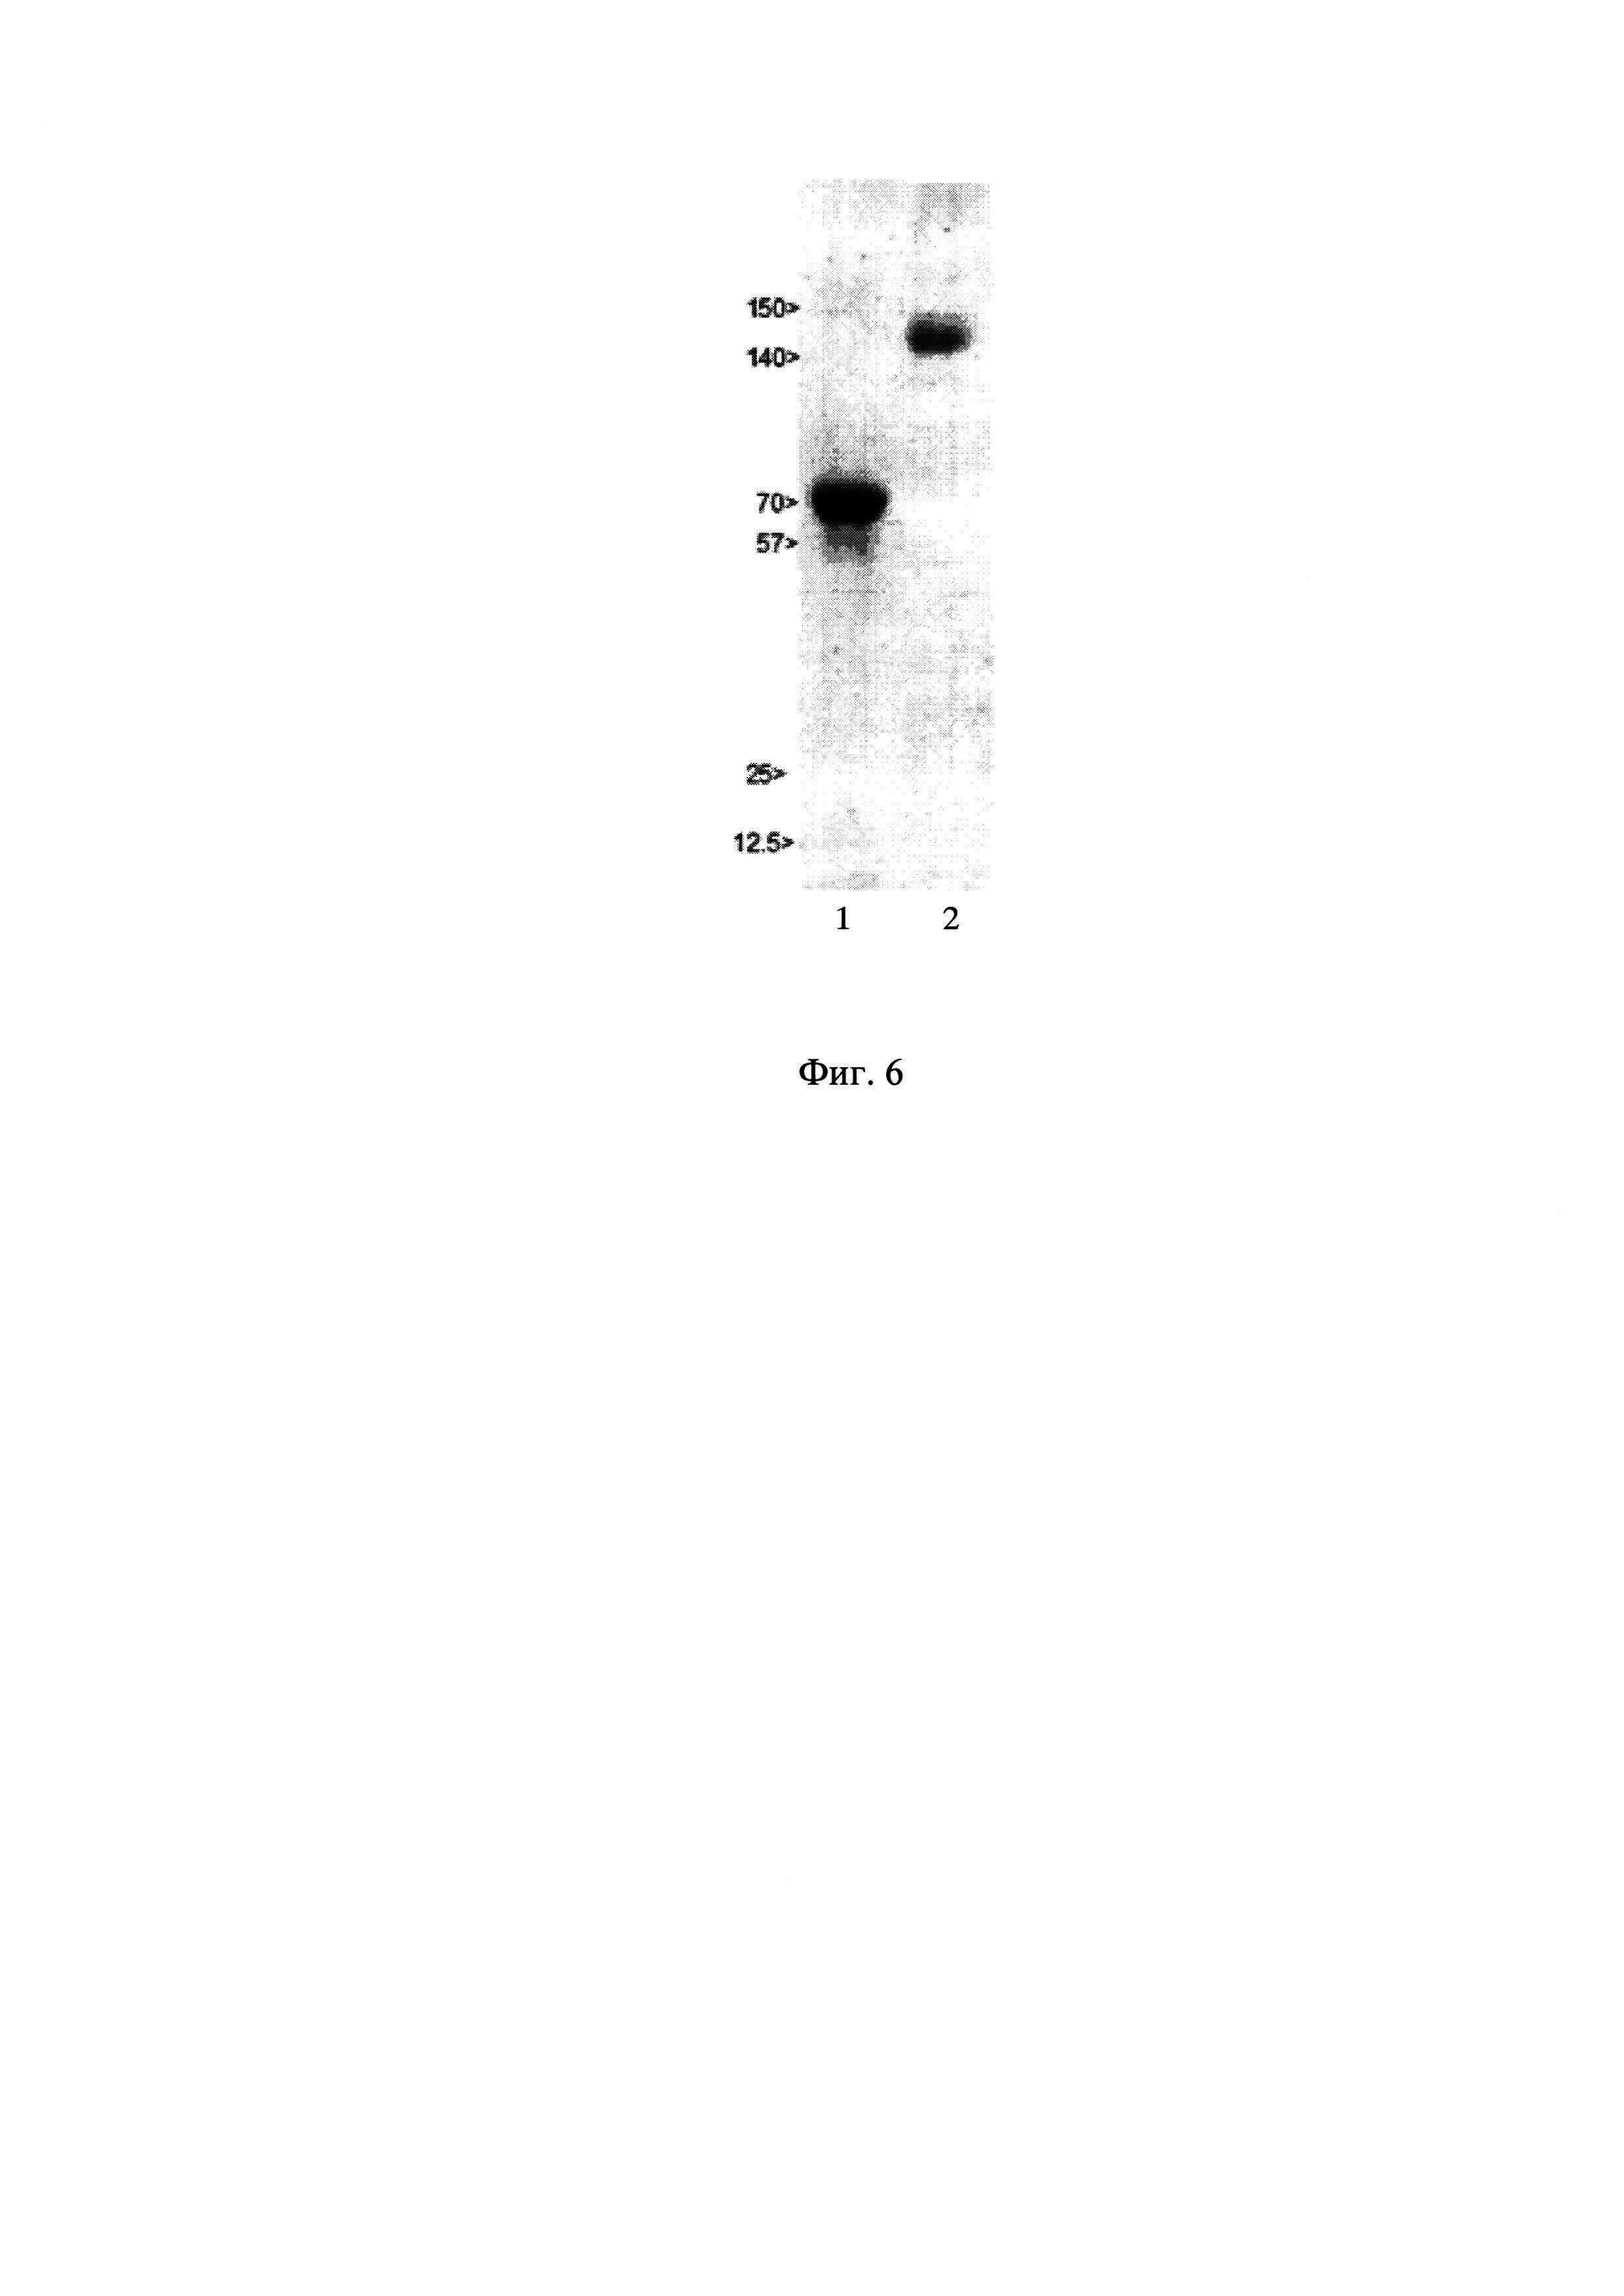 Синтетическая ДНК, кодирующая антимюллеров гормон человека, содержащий ее экспрессионный вектор pTVK4pu/MISOPT и штамм клеток яичников китайского хомячка CHO-MIS - продуцент рекомбинантного антимюллерового гормона человека